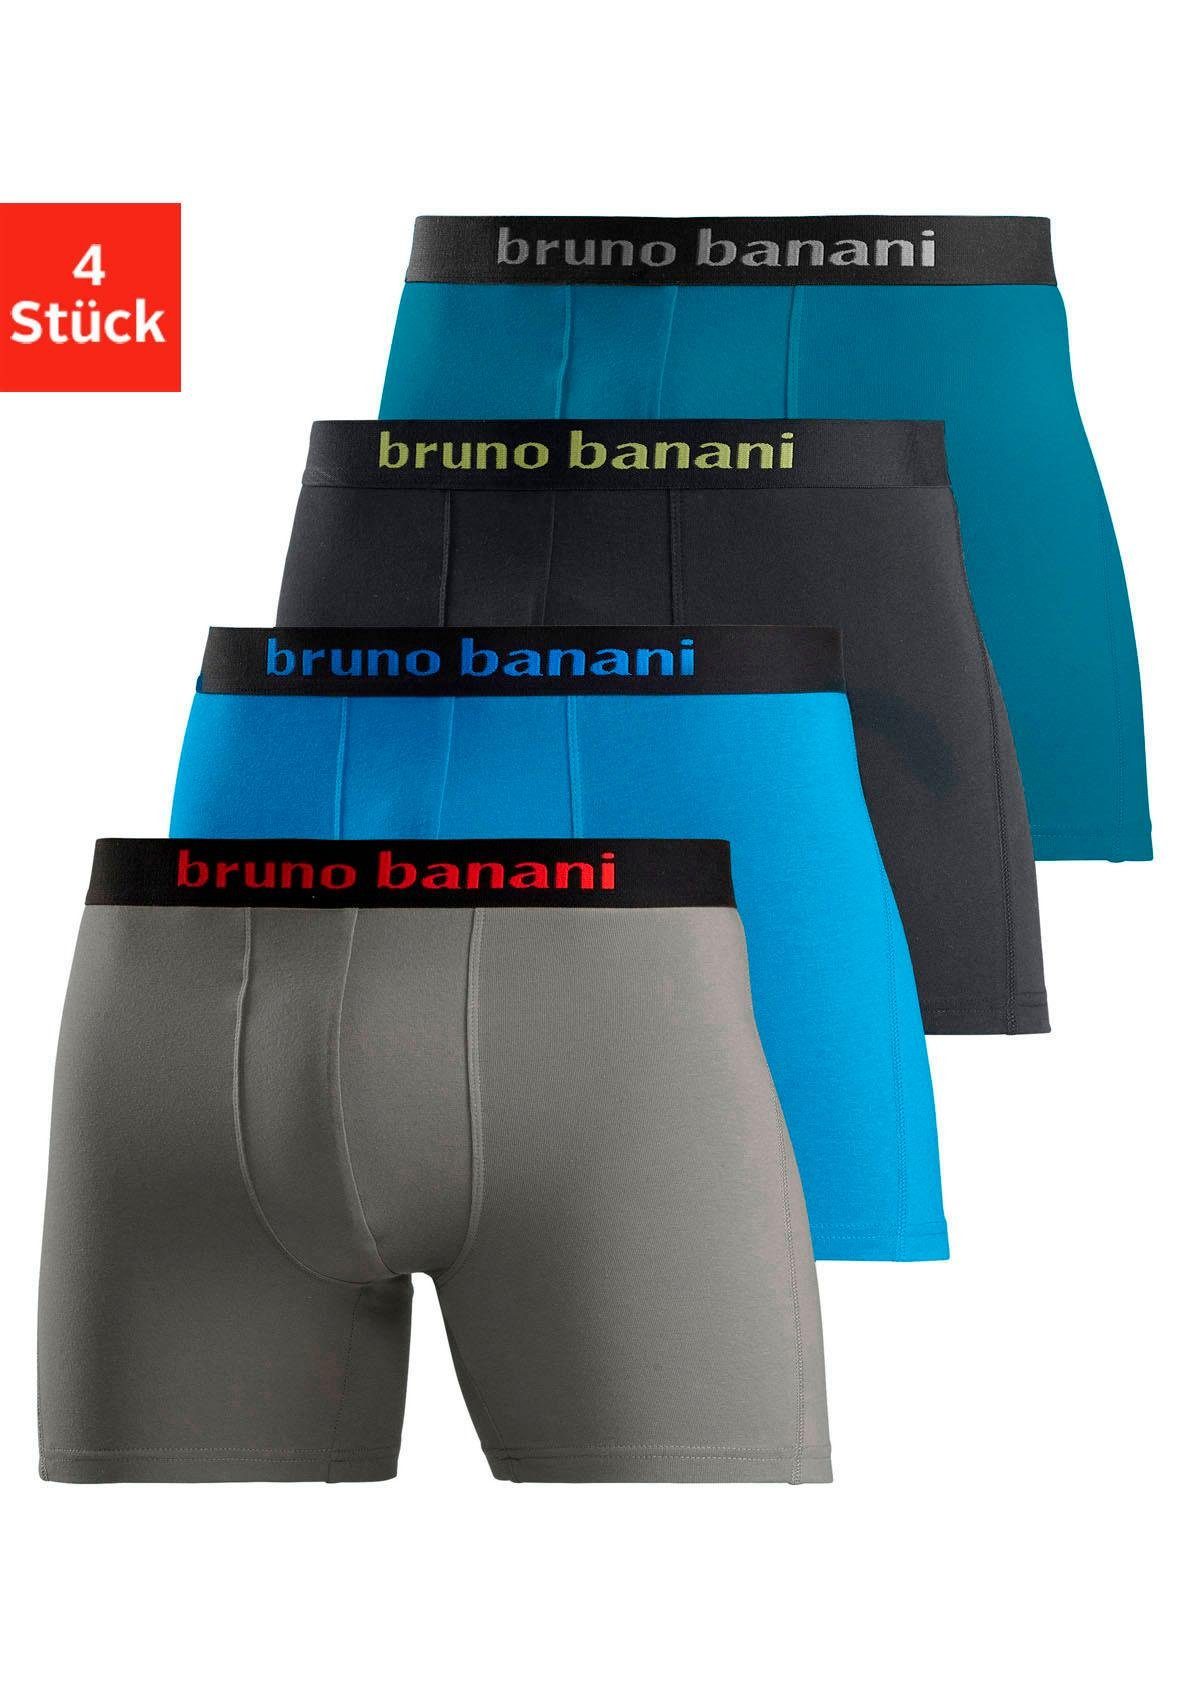 bruno banani lange boxershort met opvallende logoband (set, 4 stuks) multicolor